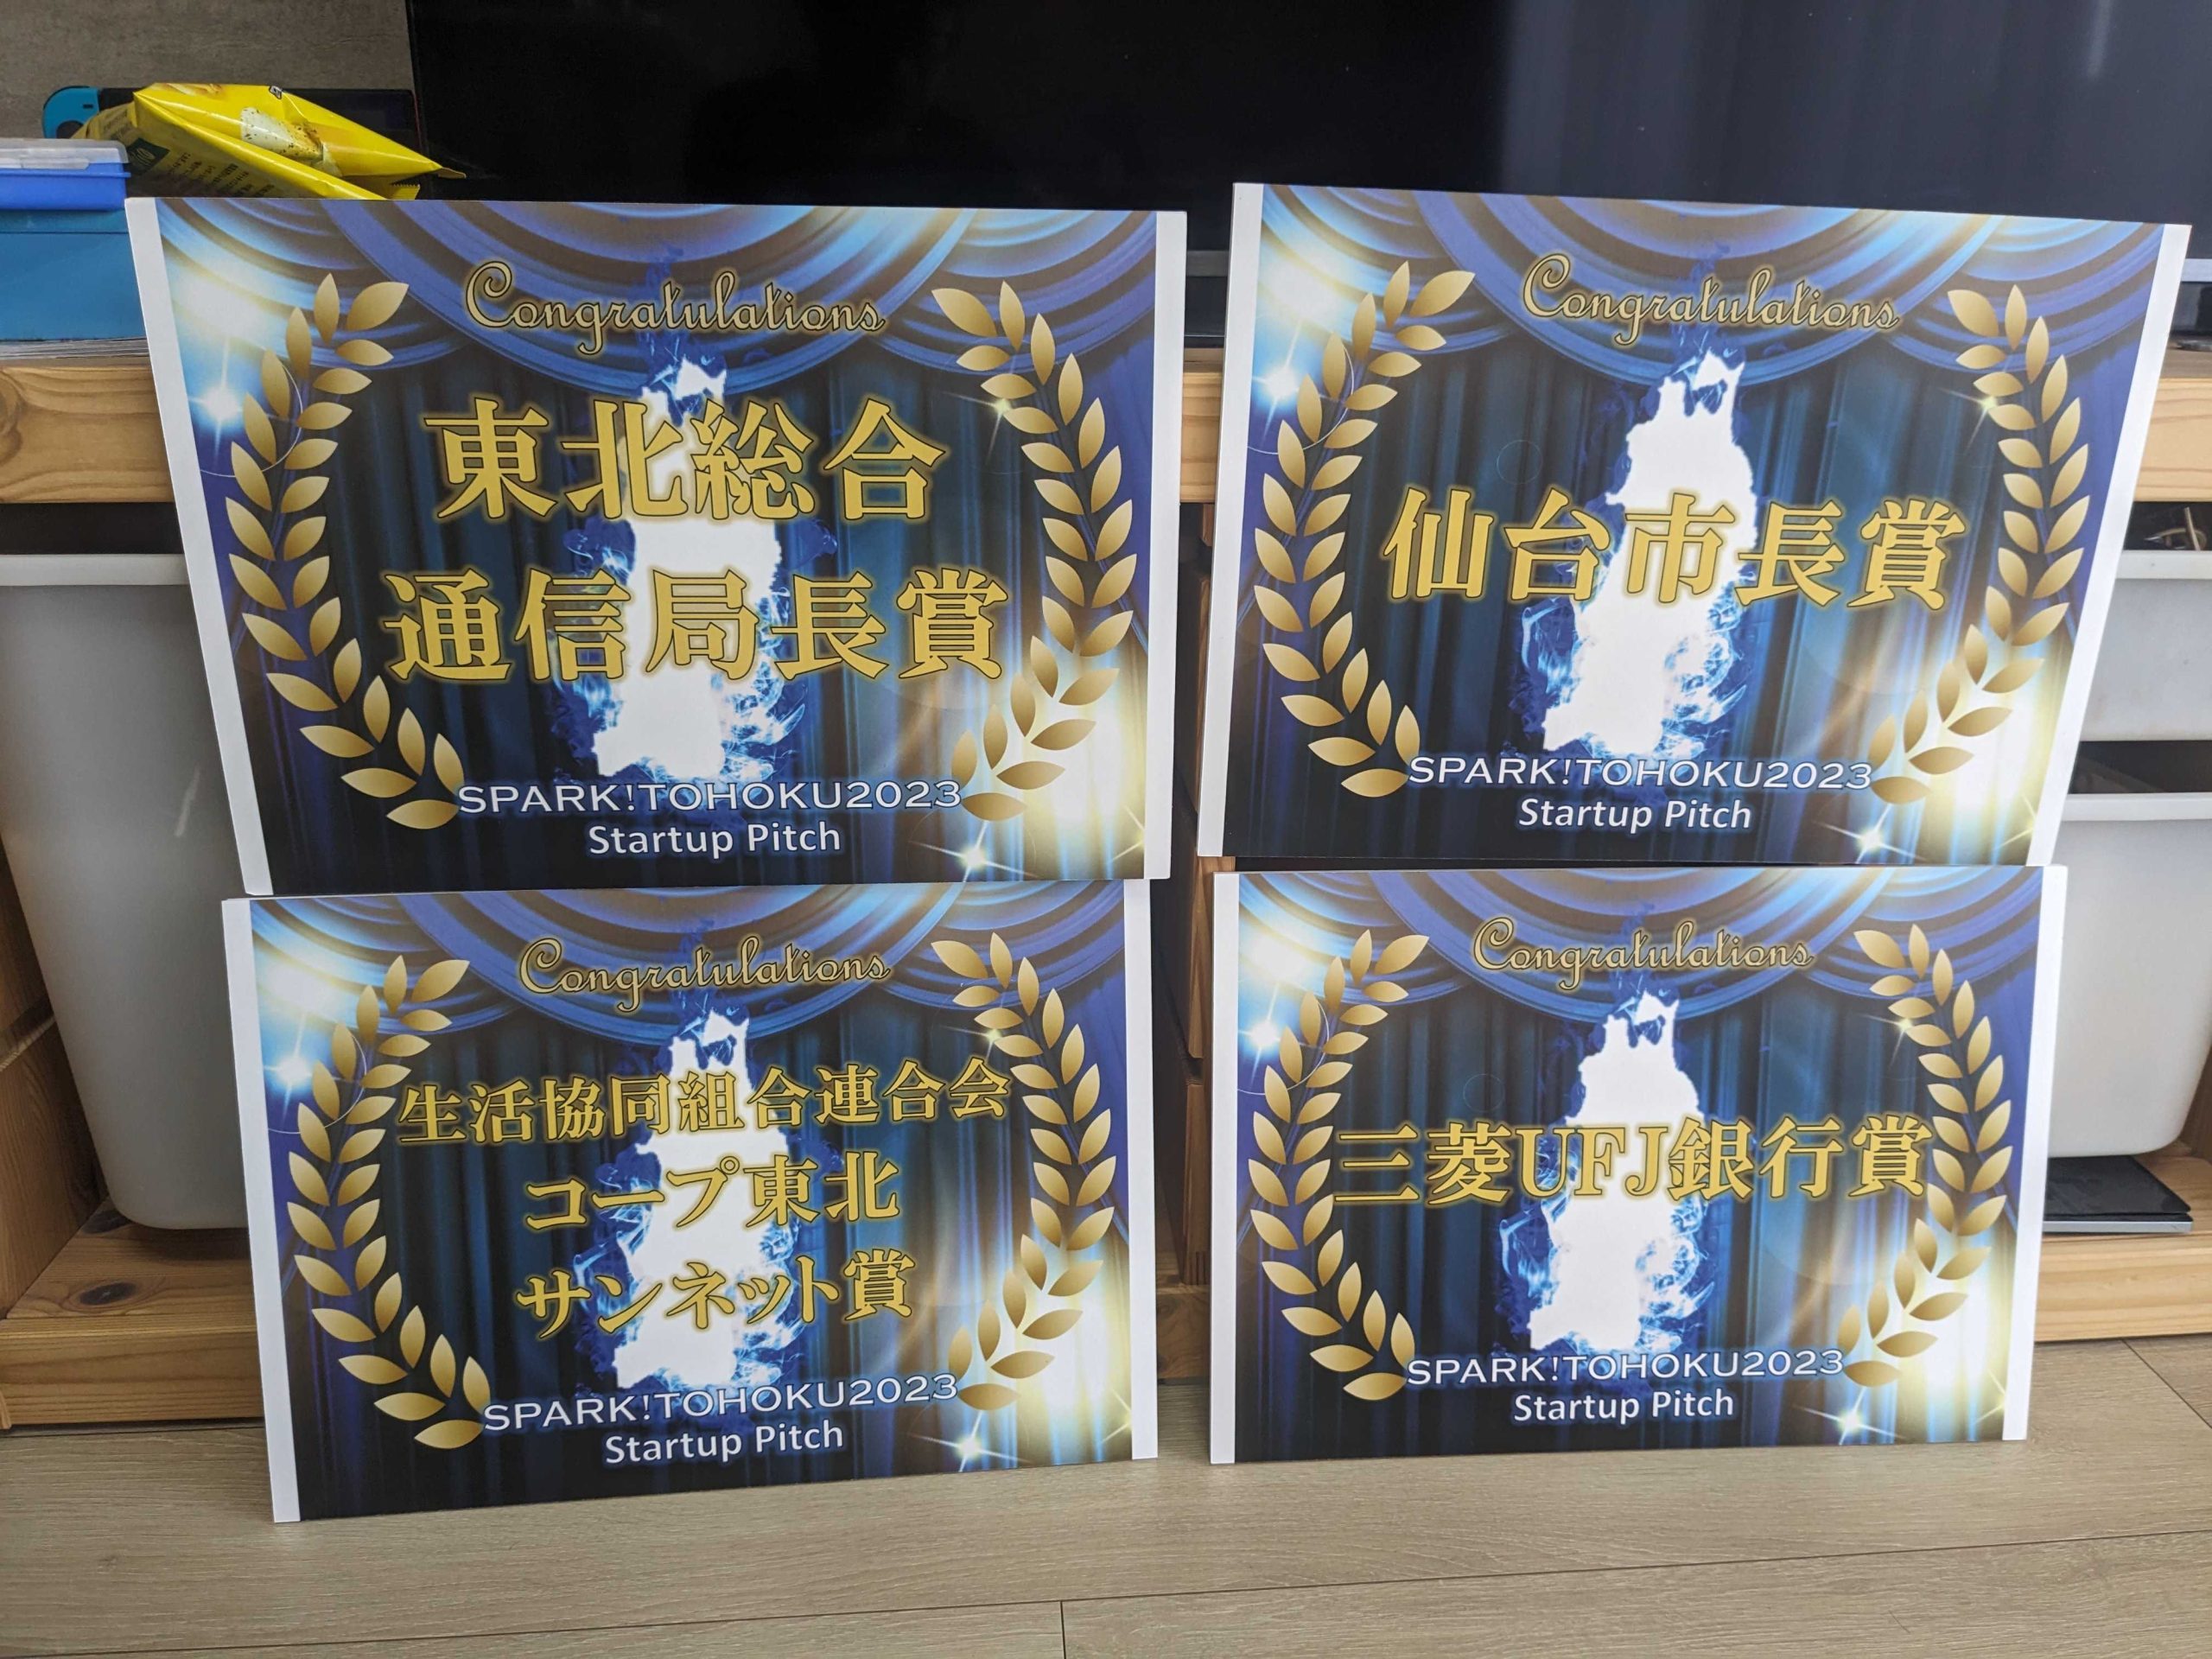 SPARK! TOHOKU 2023のピッチイベントで仙台市長賞を含む4つの賞を受賞しました